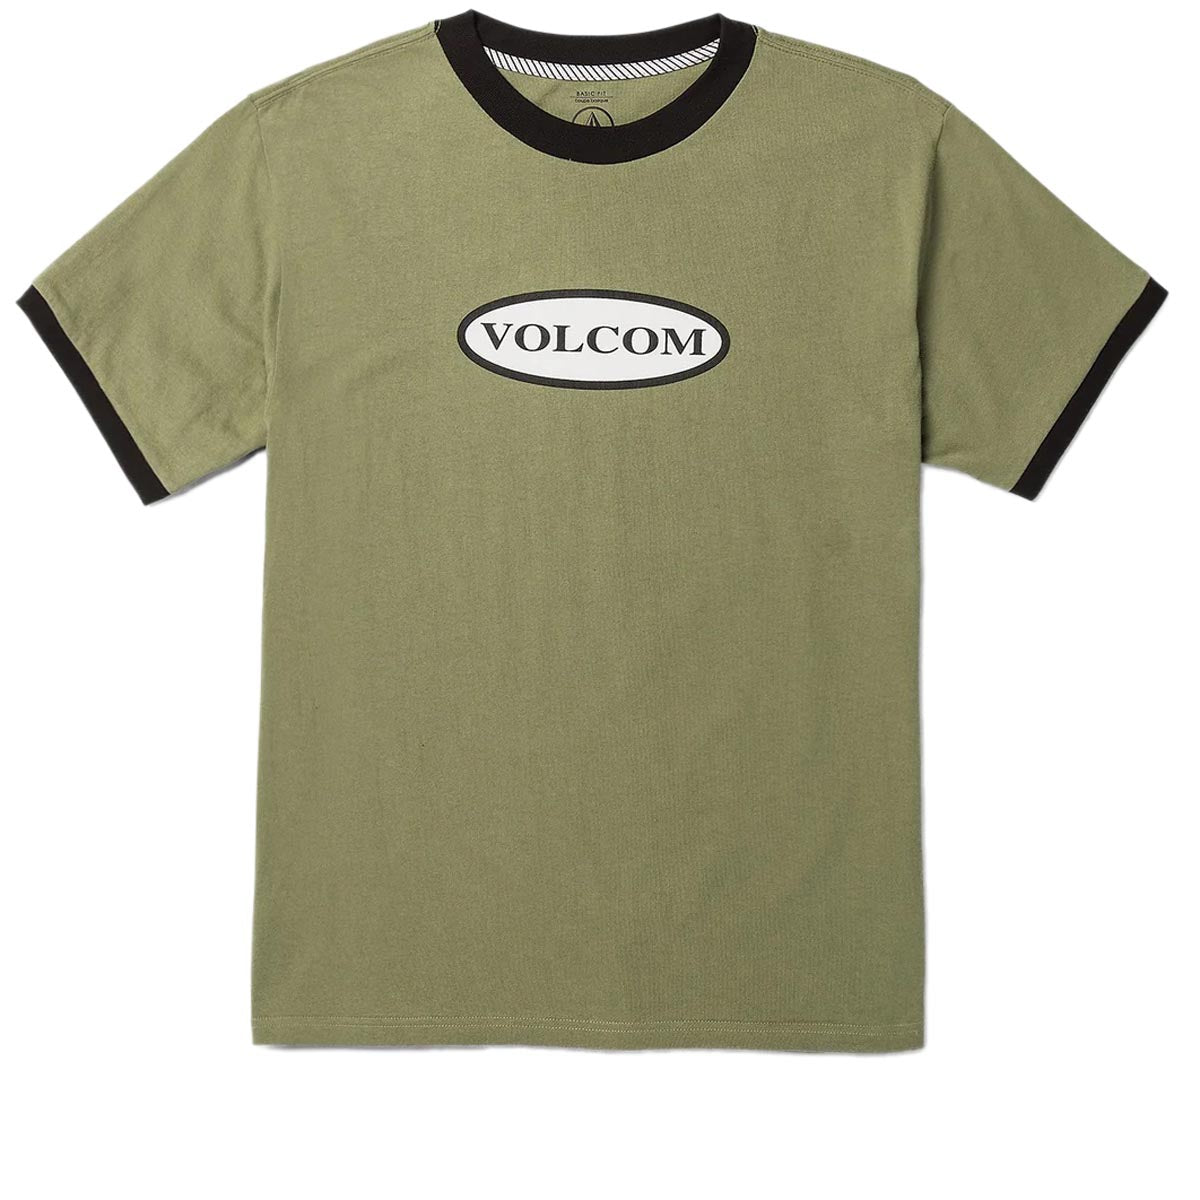 Volcom Ringer Time T-Shirt - Thyme Green image 1